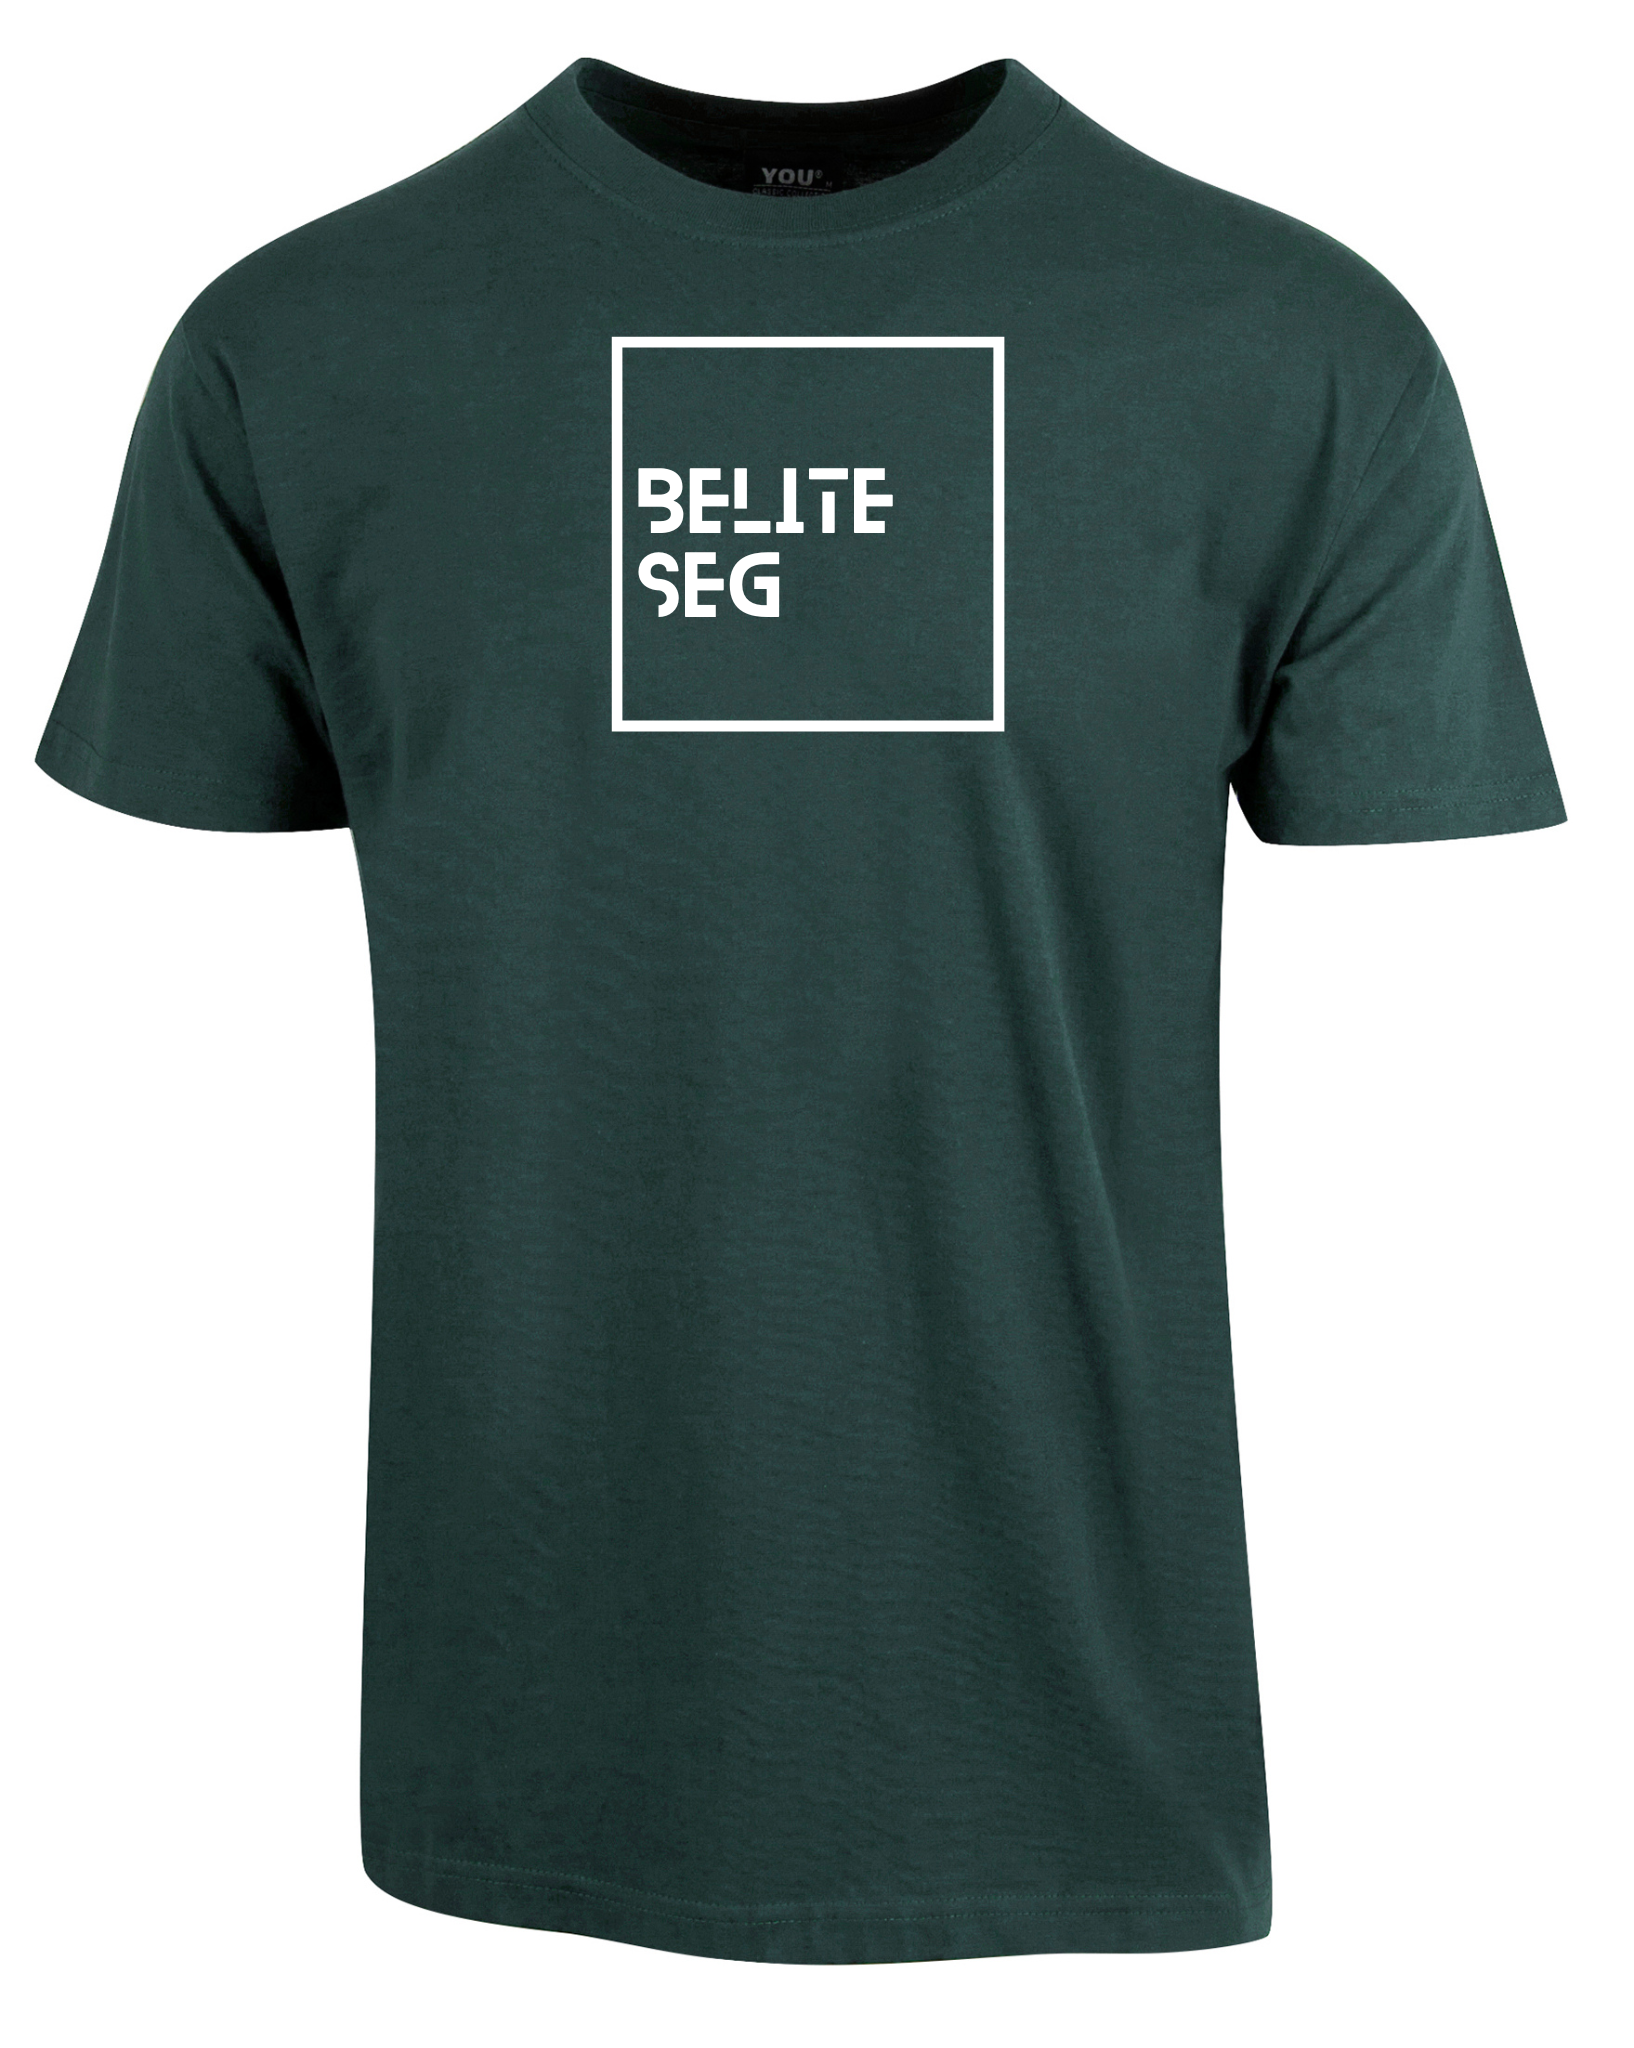 T-skjorte med teksten "Belite seg"